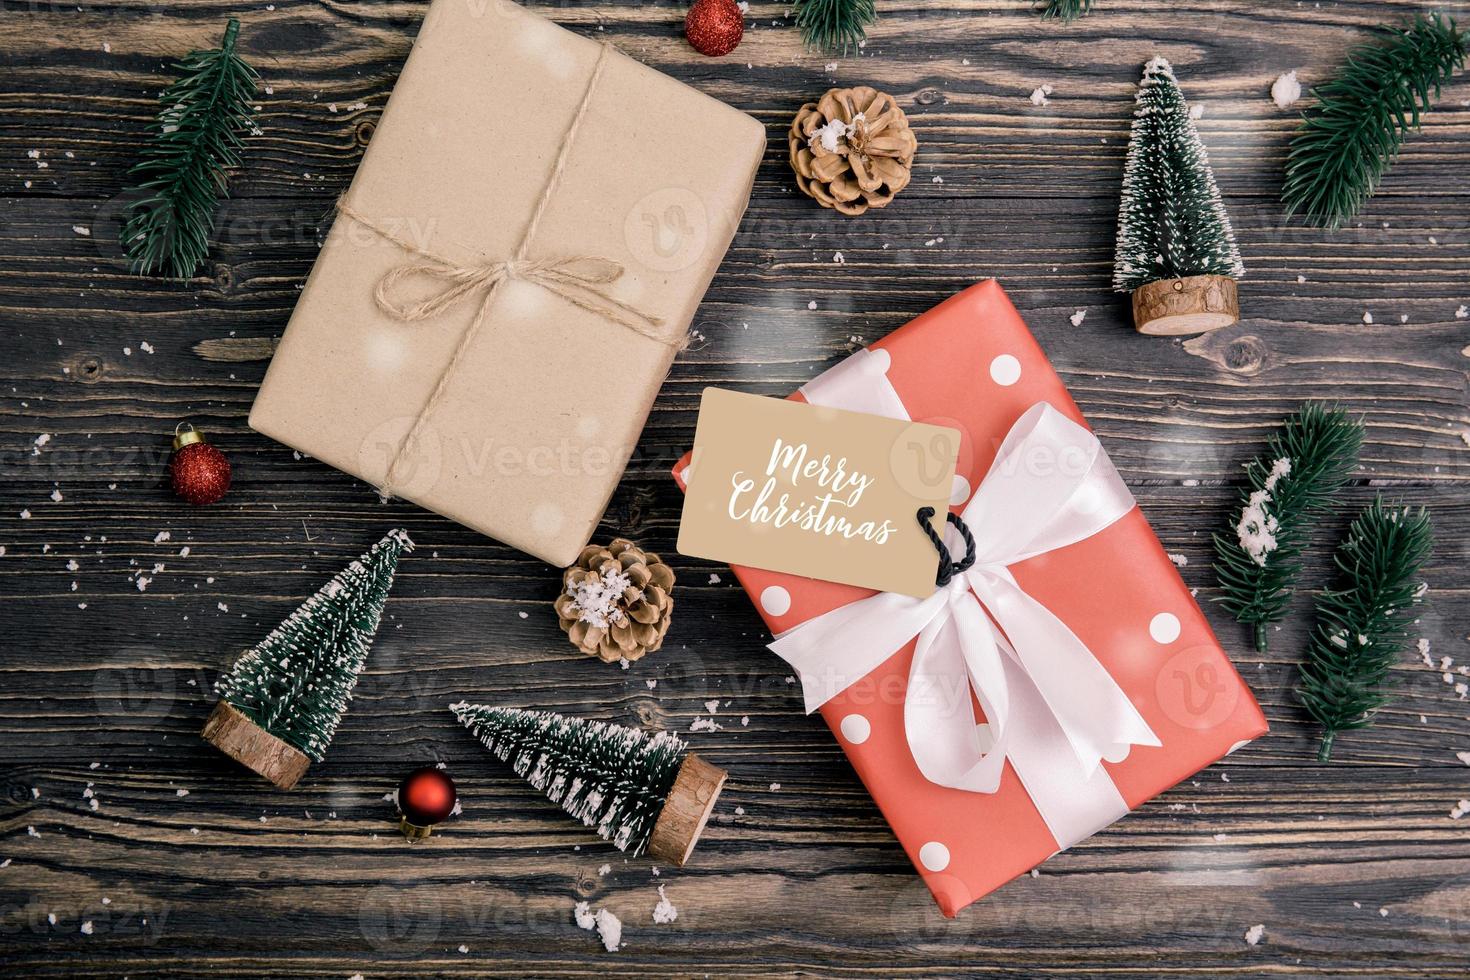 weihnachtsfeiertagskomposition mit roter geschenkbox und tagdekoration auf holzhintergrund, neujahr und weihnachten oder jahrestag mit geschenken auf holztisch in der saison, draufsicht oder flachlage. foto